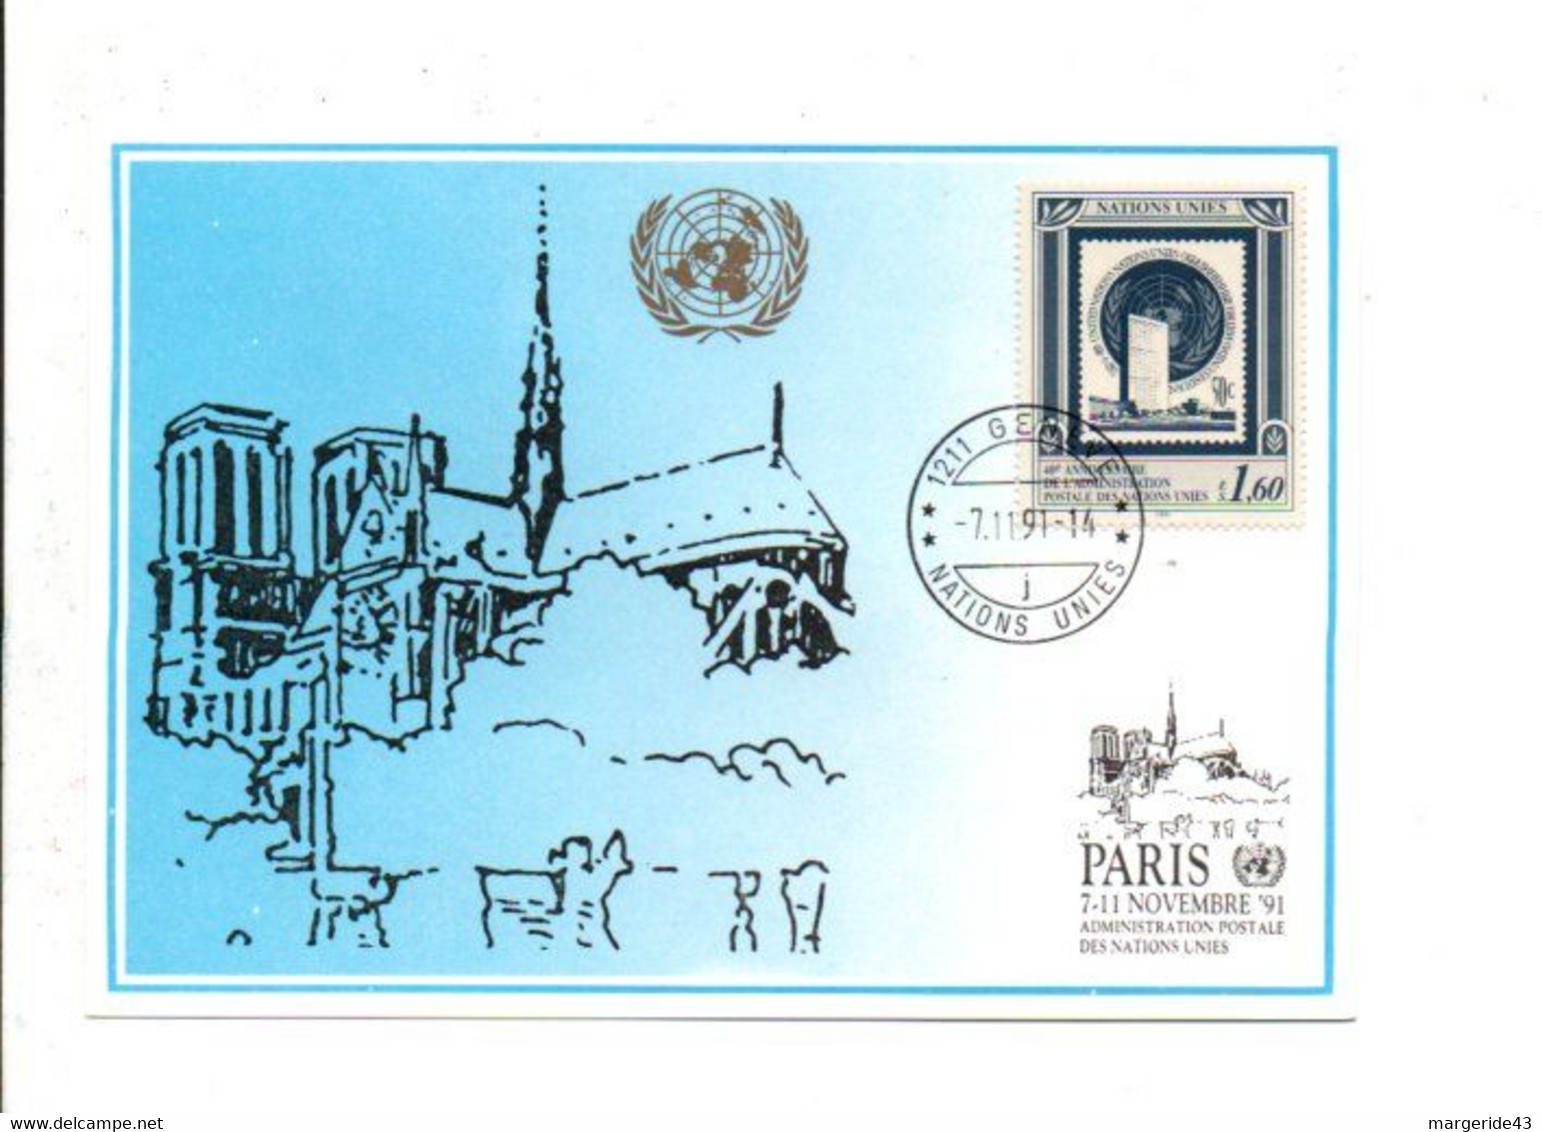 NATIONS UNIES EXPO DE PARIS 1991 - Covers & Documents